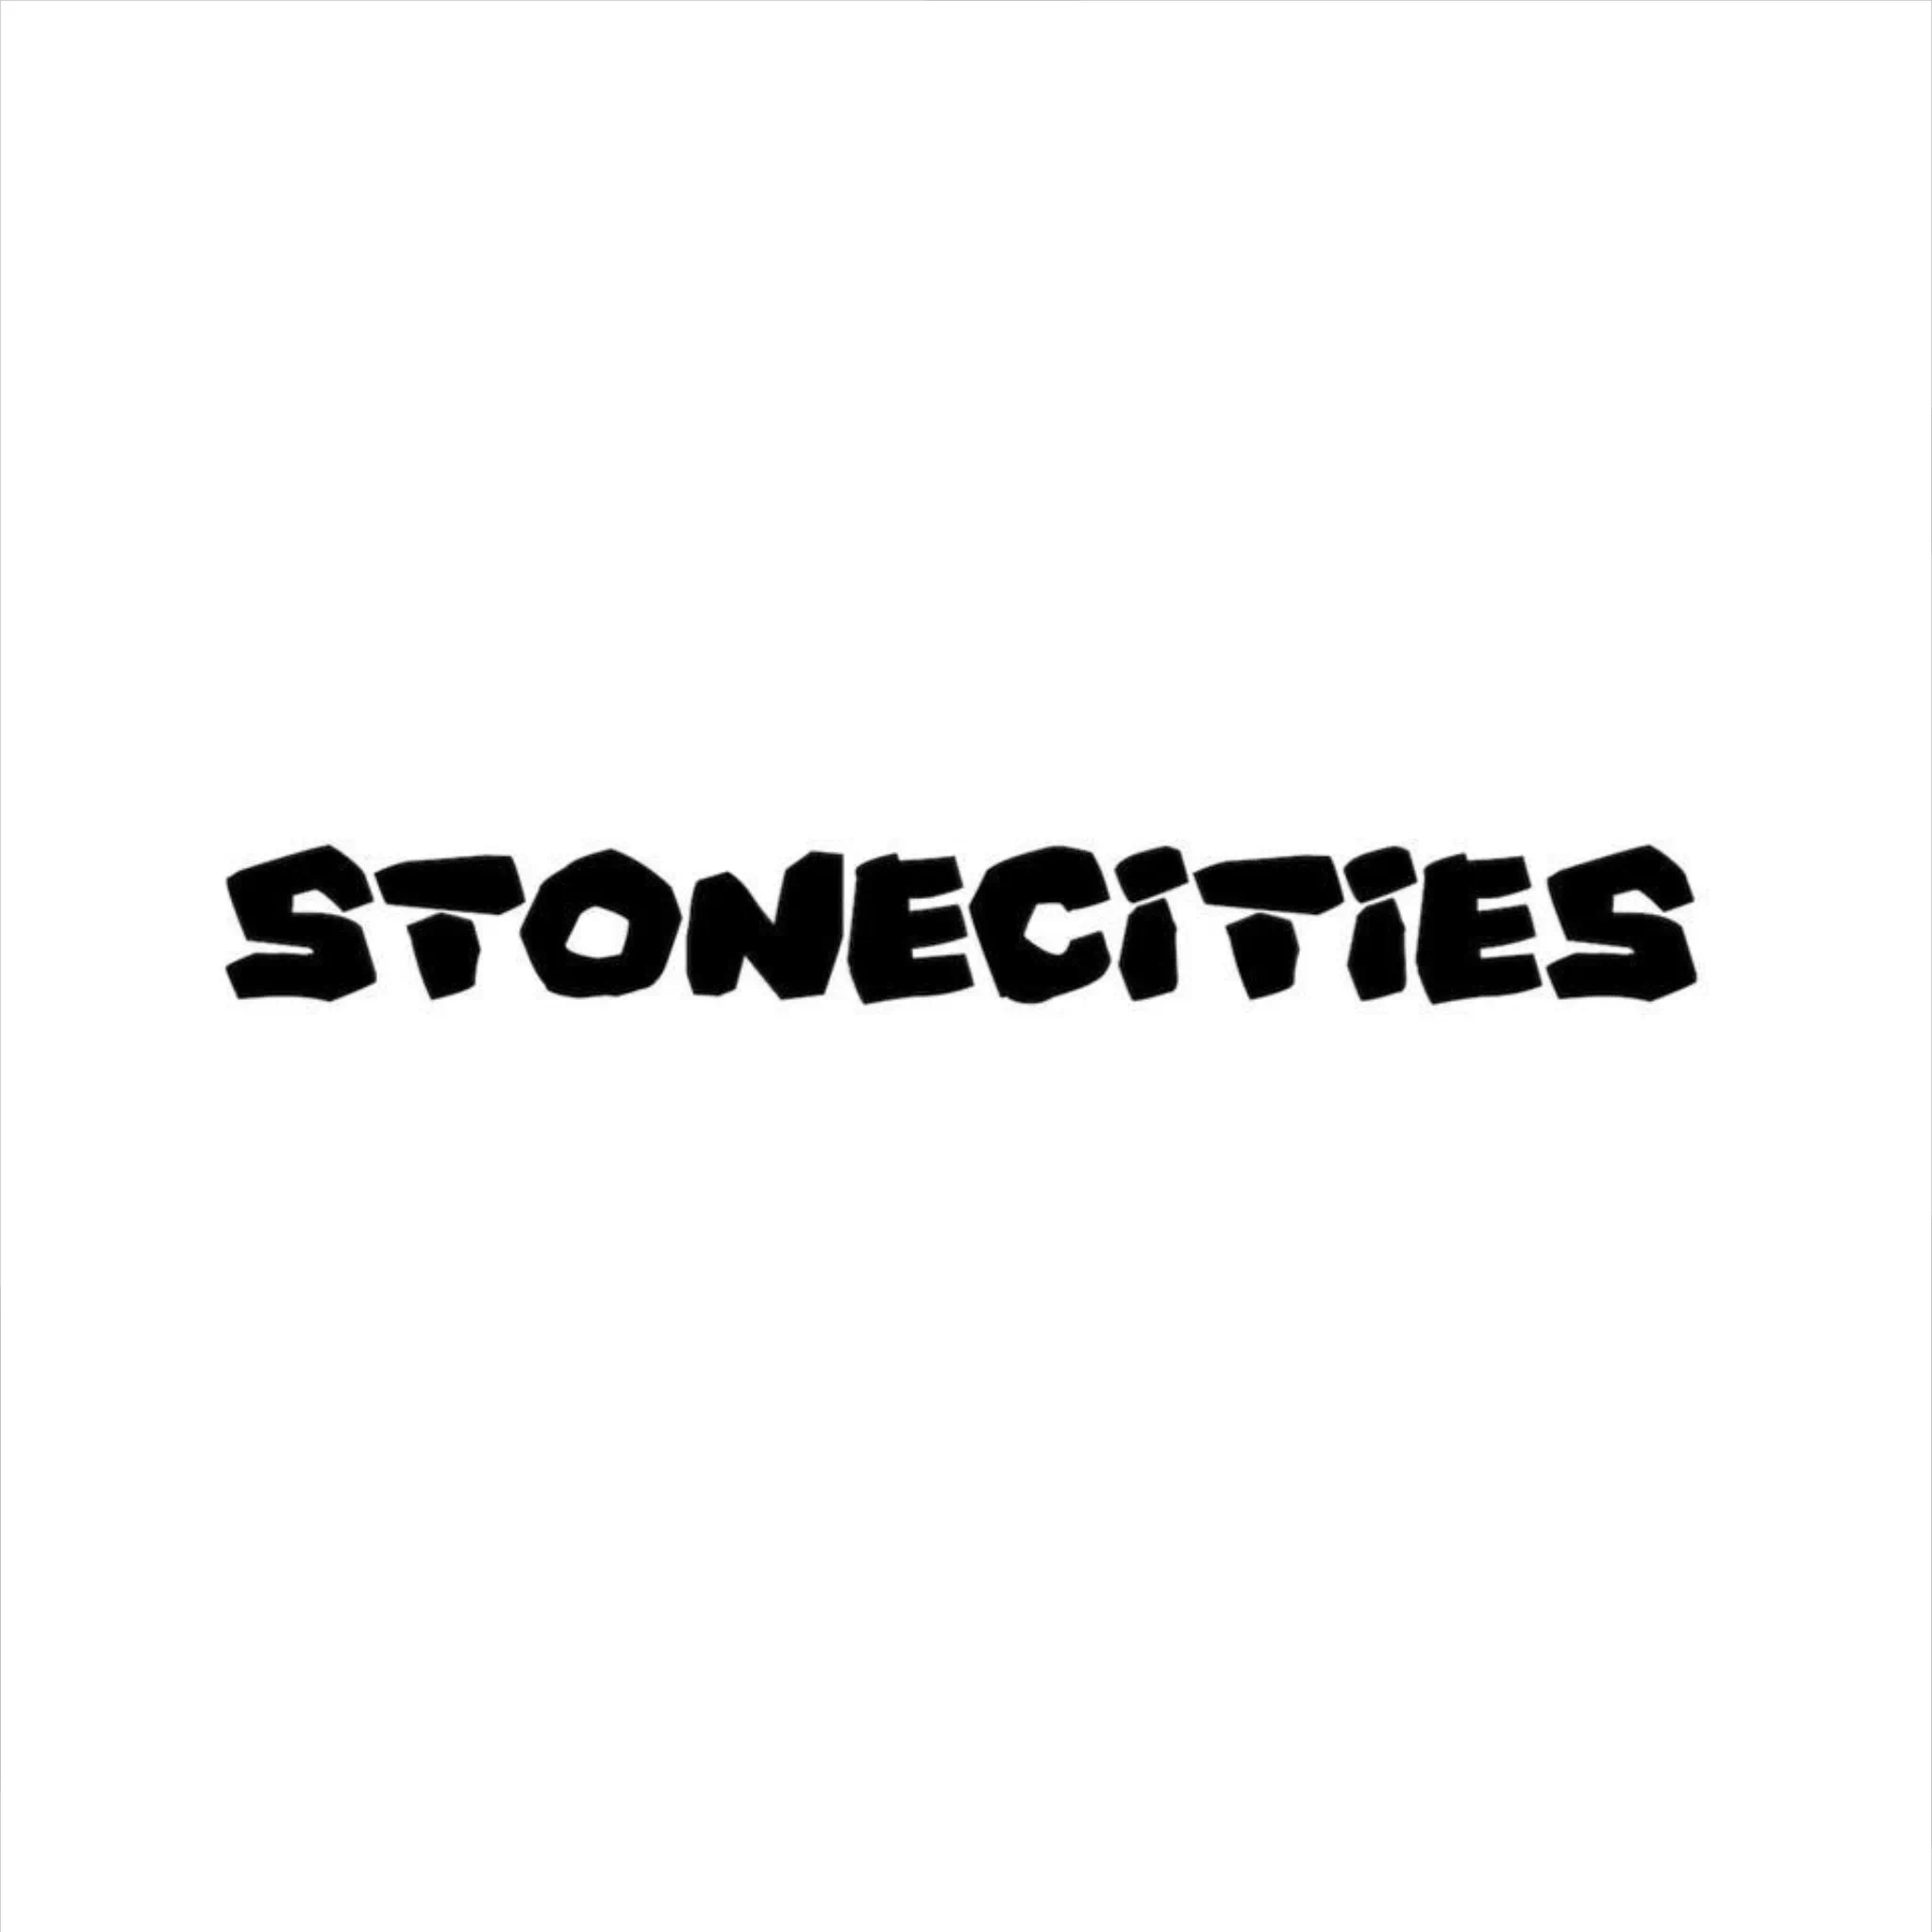 Stonecities